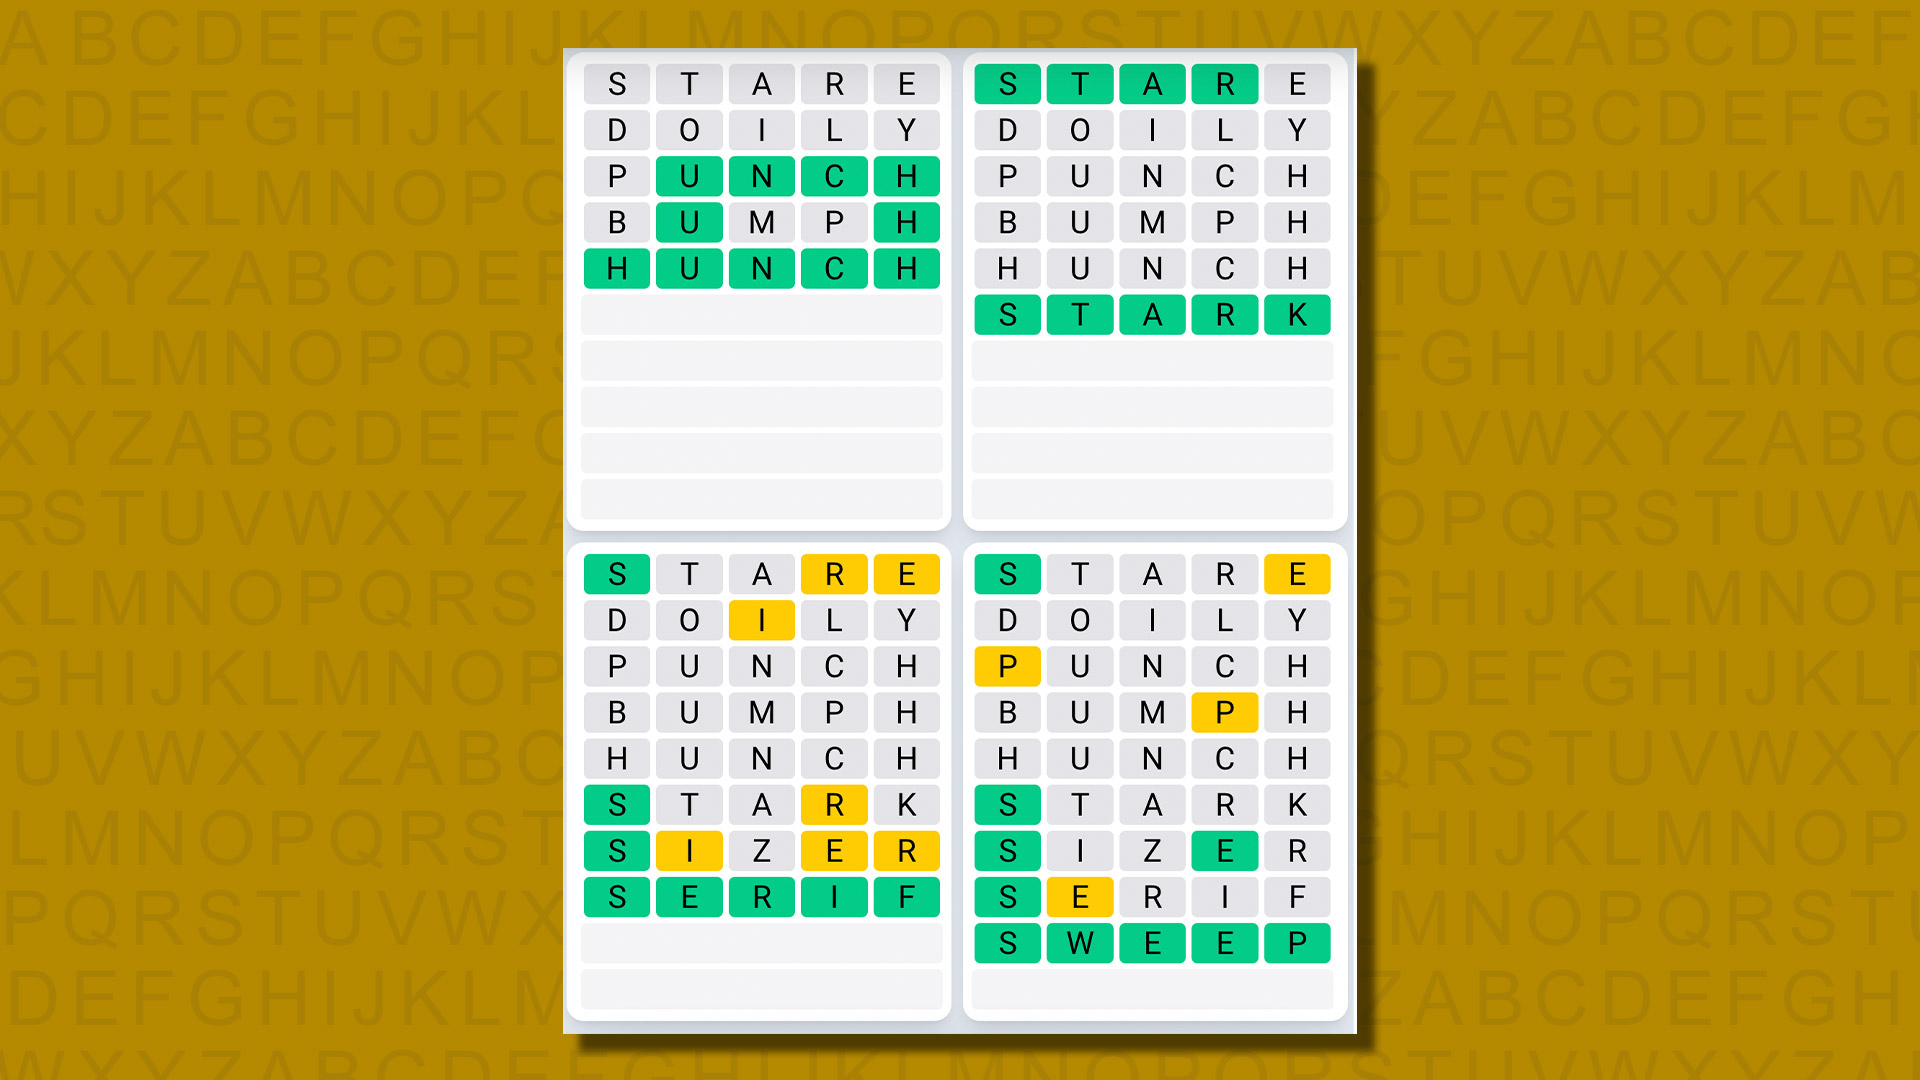 Ежедневная последовательность ответов Quordle для игры 611 на желтом фоне